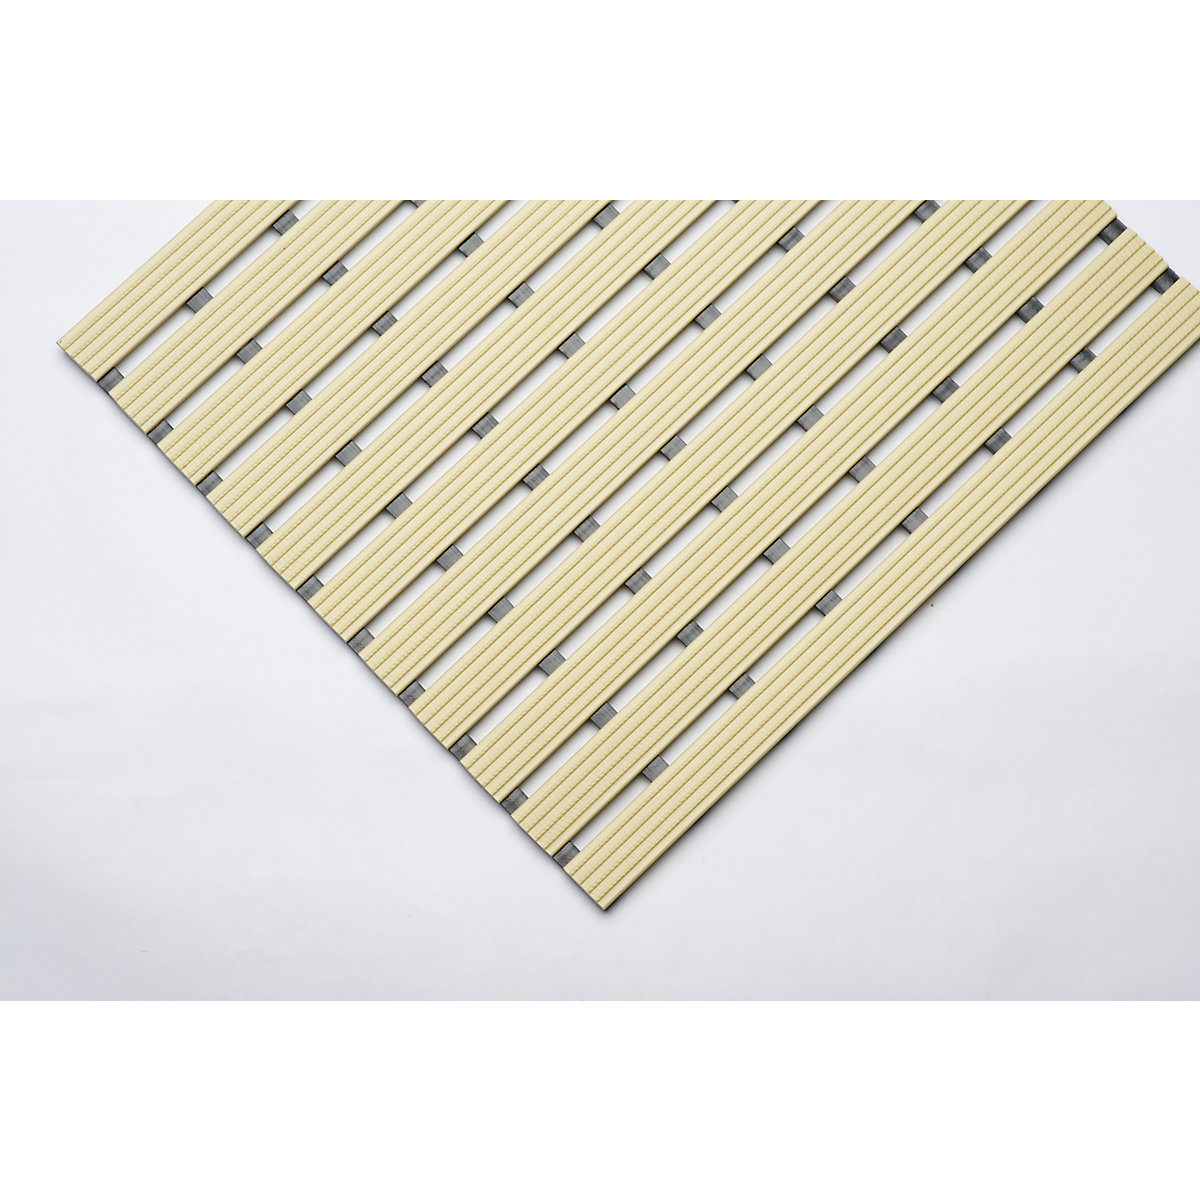 PVC profile matting, per metre